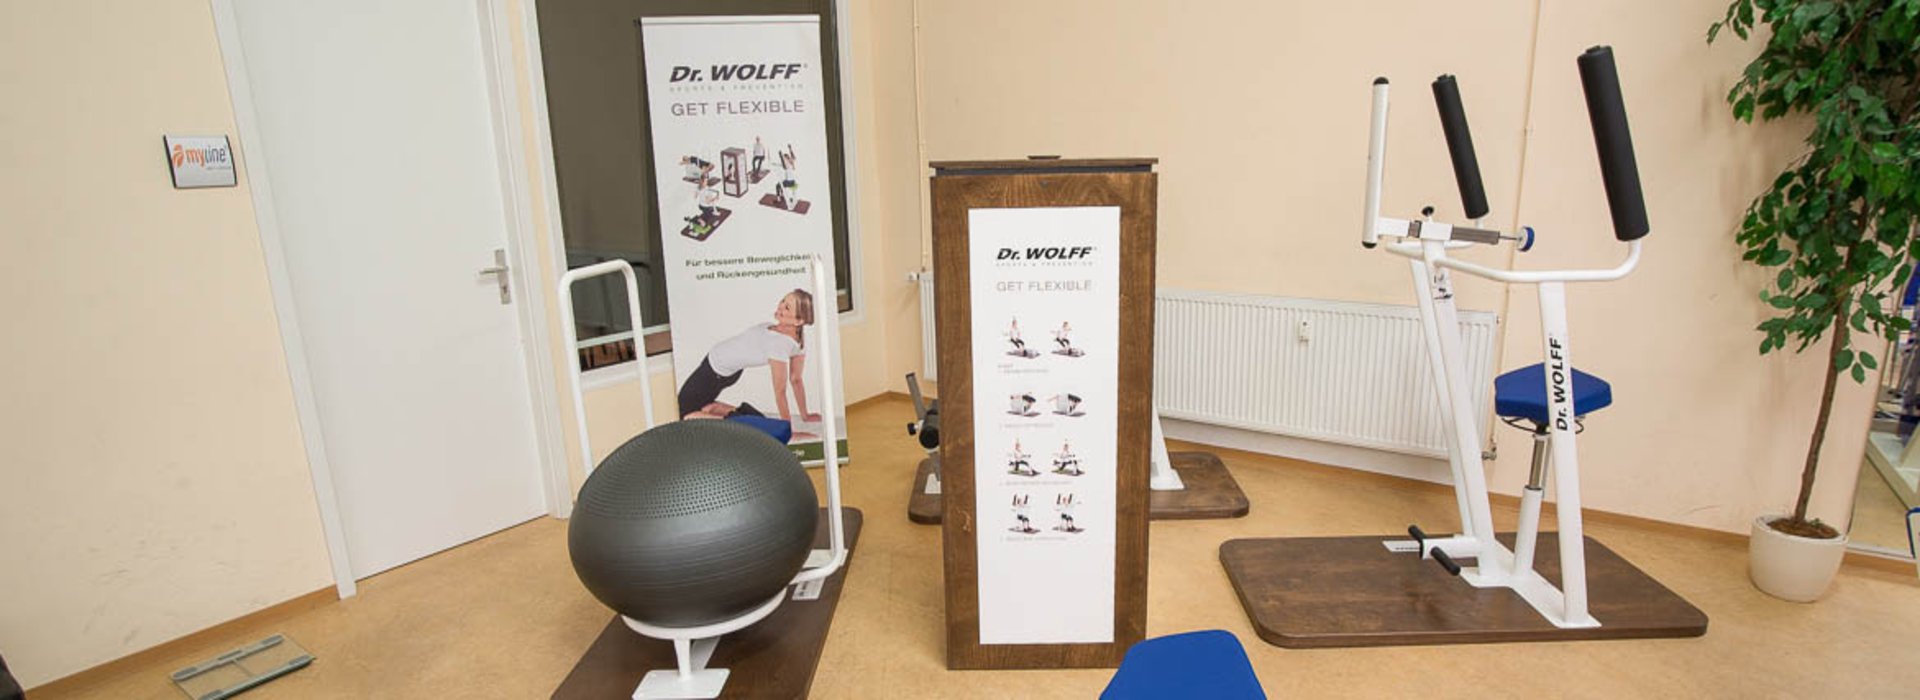 Fitness nach Dr. WOLFF - für bessere Beweglichkeit und Rückengesundheit